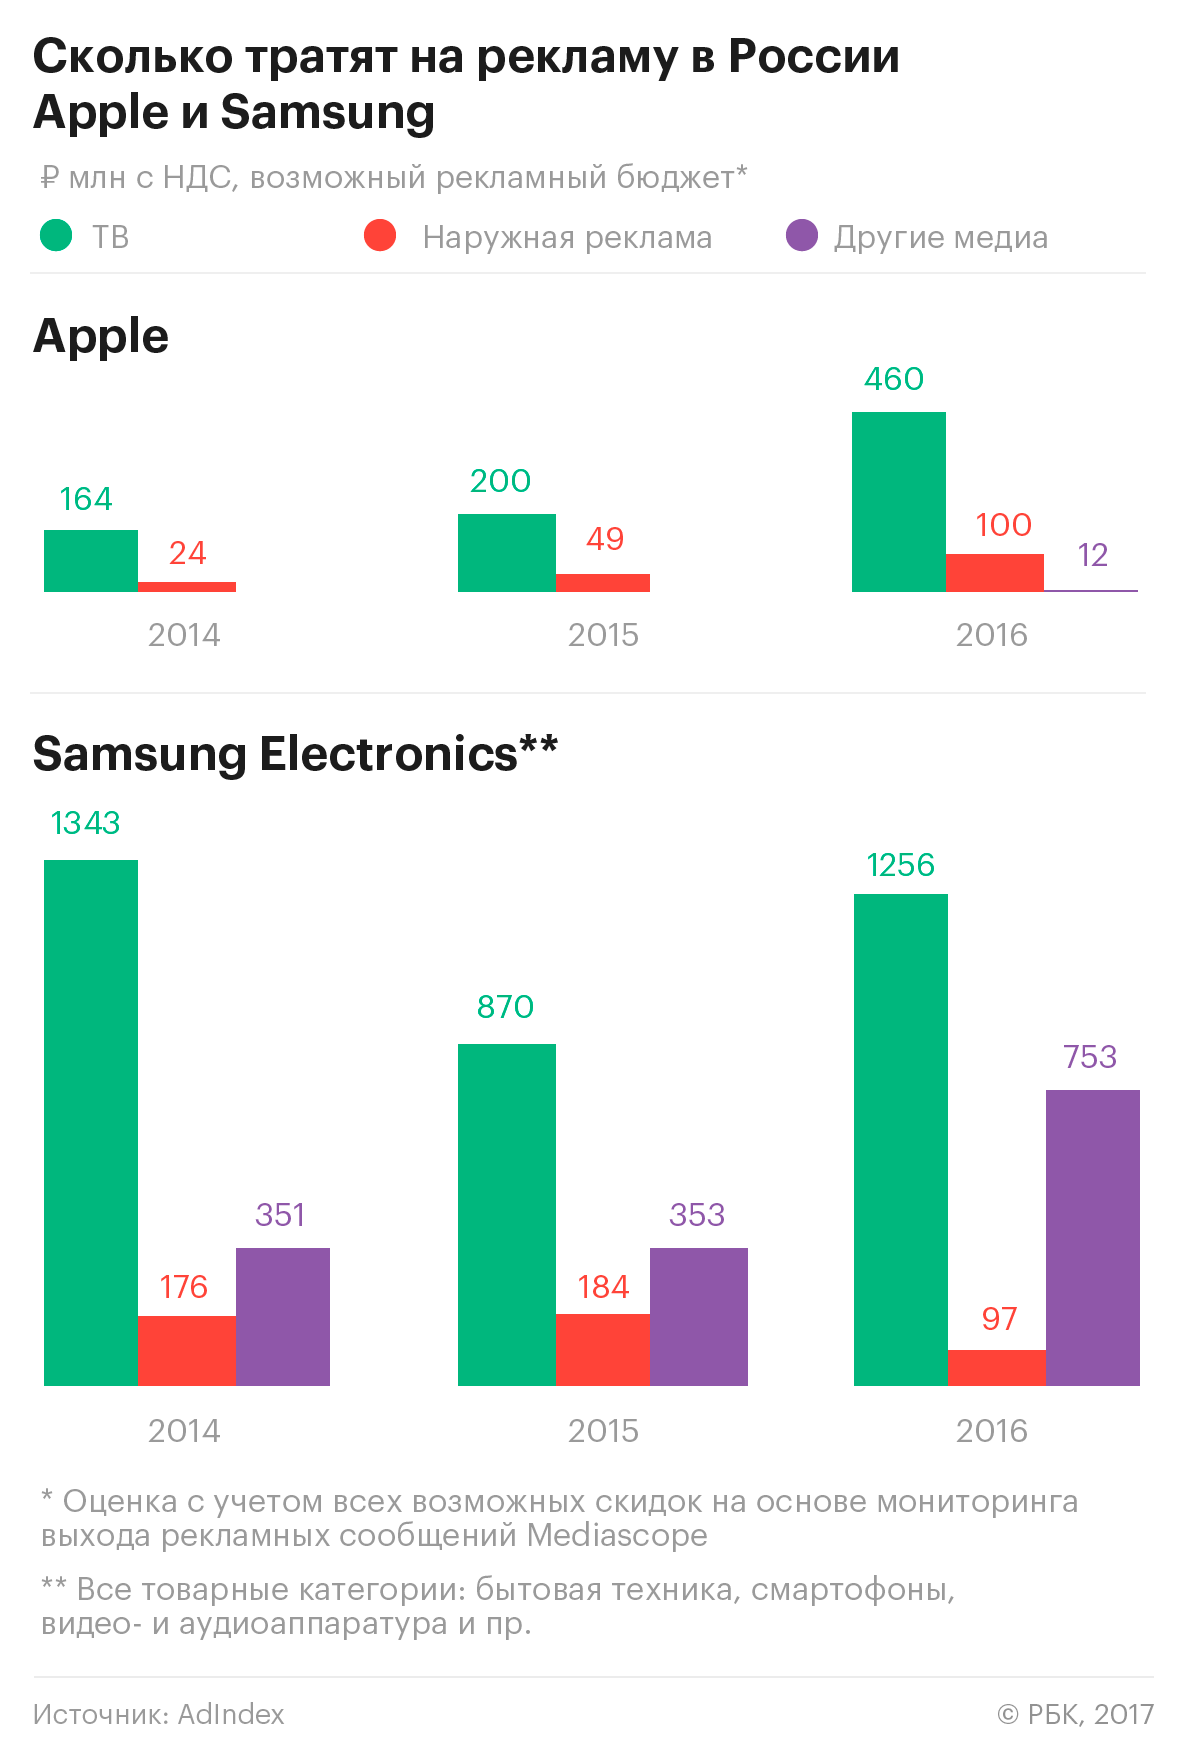 Сколько потратить на рекламу. Сколько компании тратят на рекламу. Траты на рекламу Apple и Samsung. Сколько тратит на рекламу Apple. Сколько тратить на рекламу.